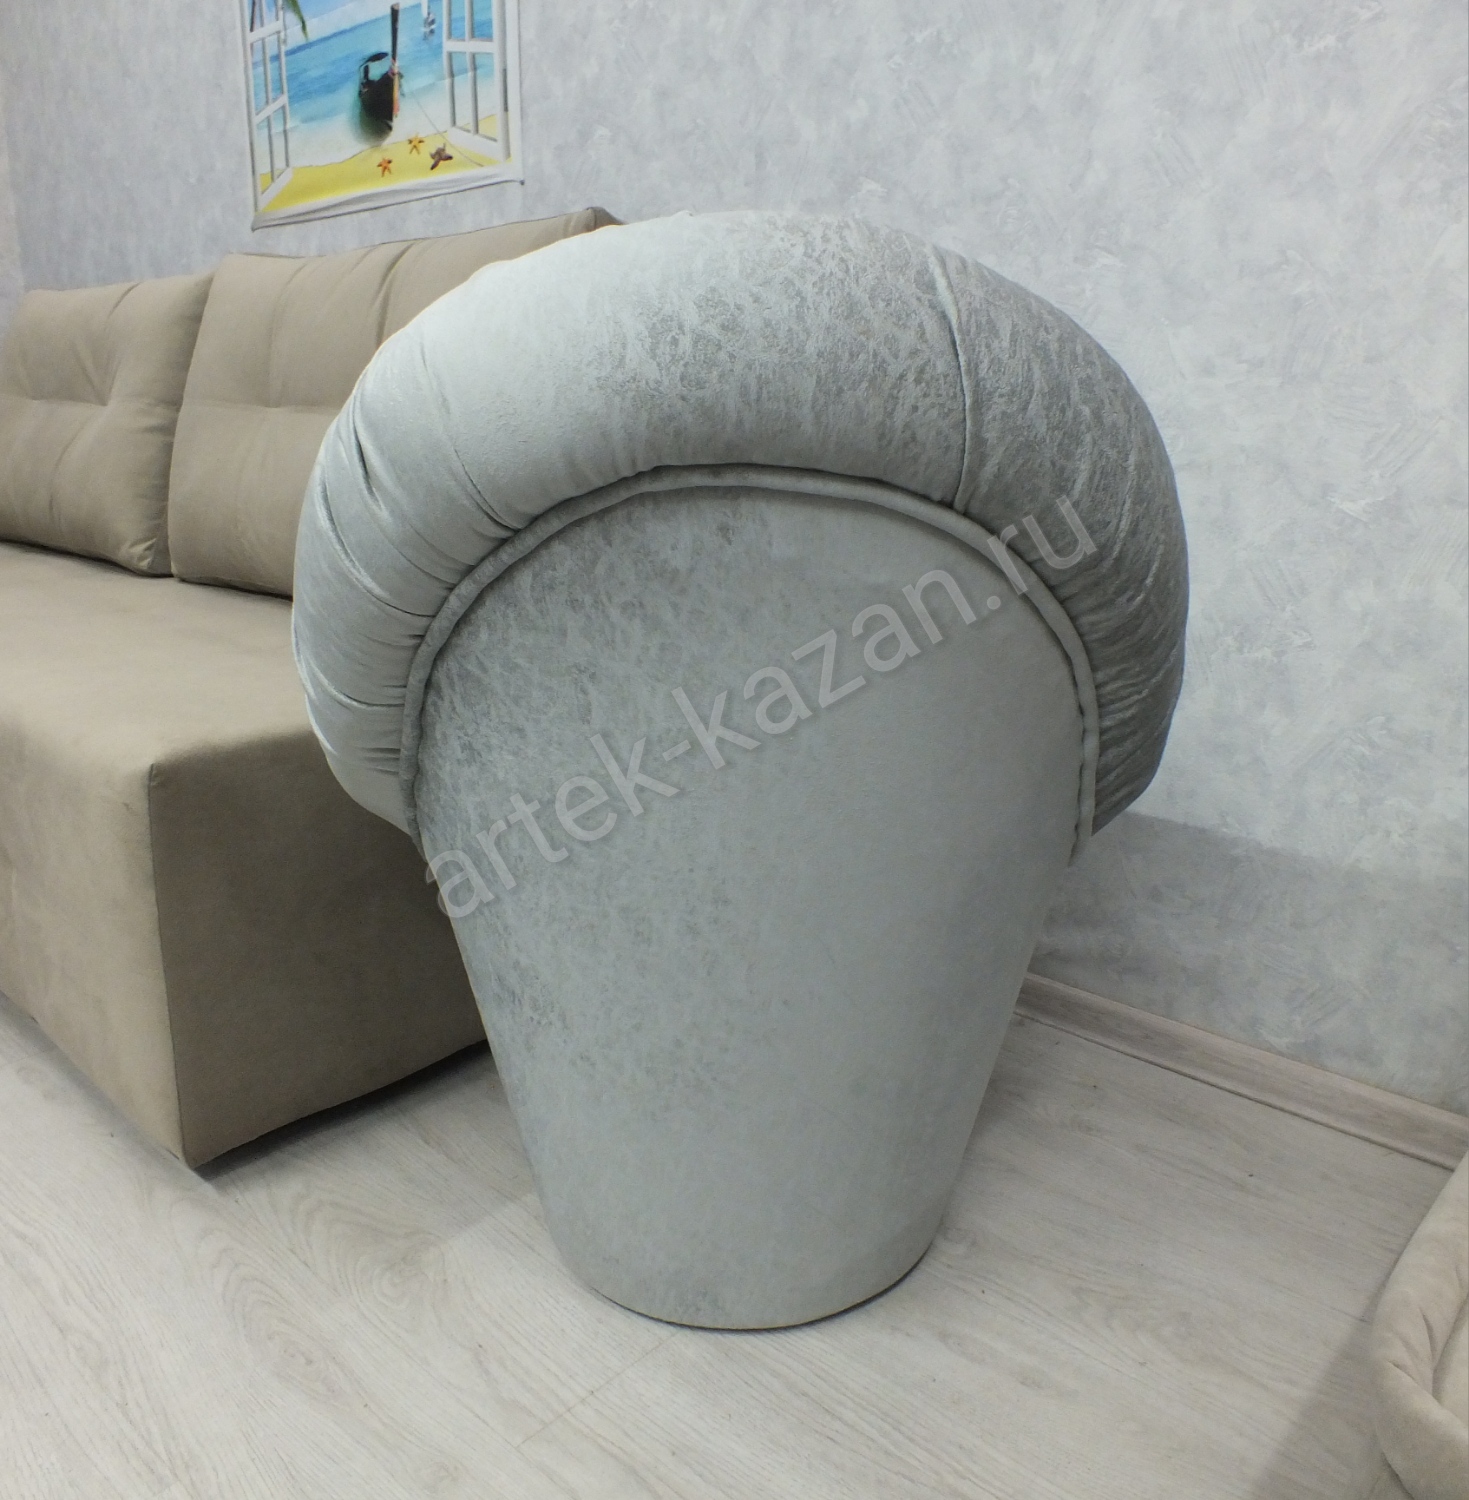 Кресло-пуф, фото 3. Купить недорогой диван по низкой цене от производителя можно у нас.